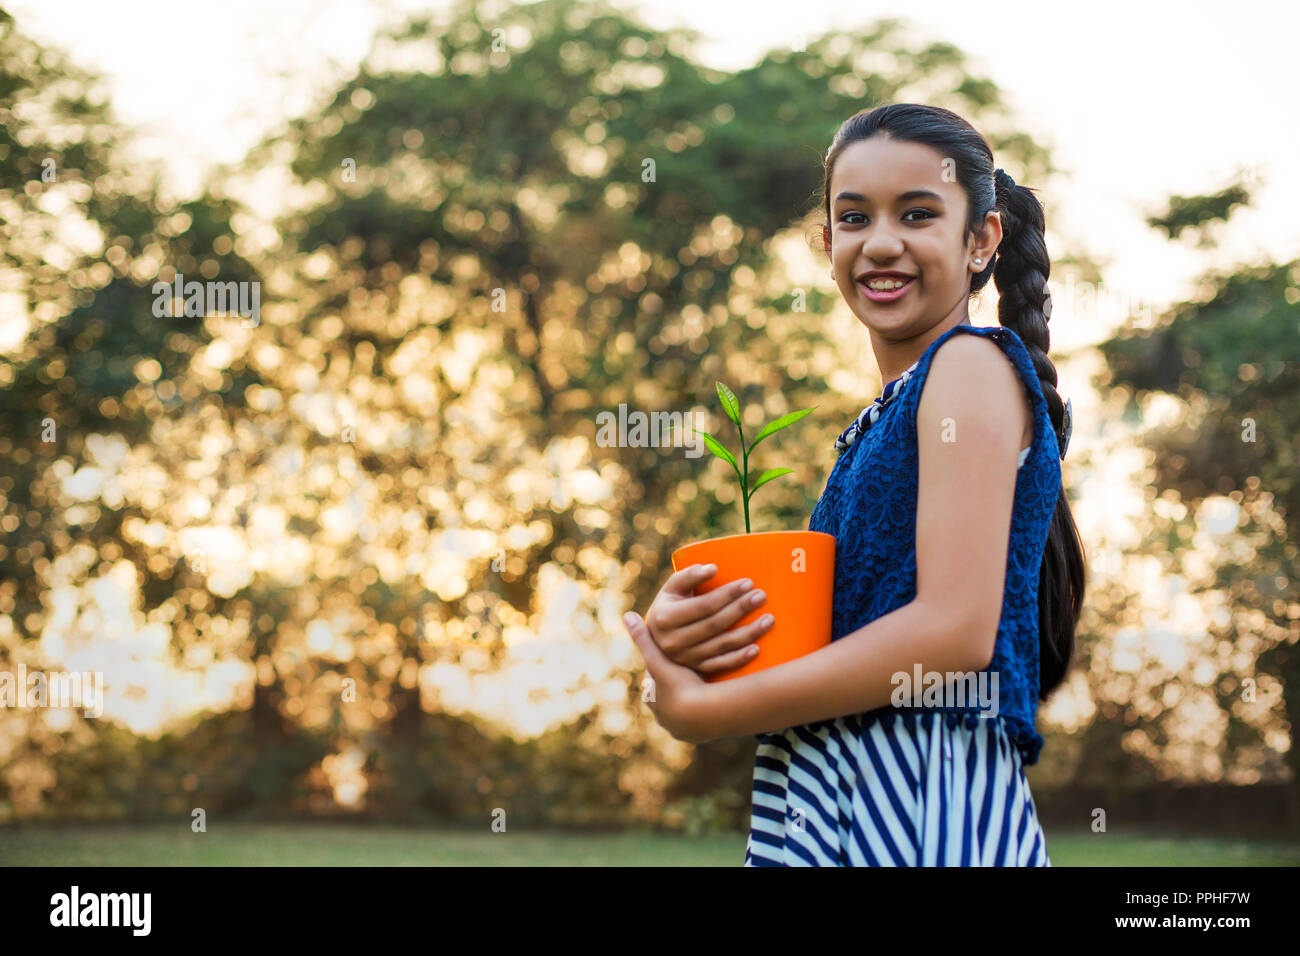 Low Angle View mit einem lächelnden jungen Mädchen mit einem Blumentopf in der Hand im Park. Stockfoto